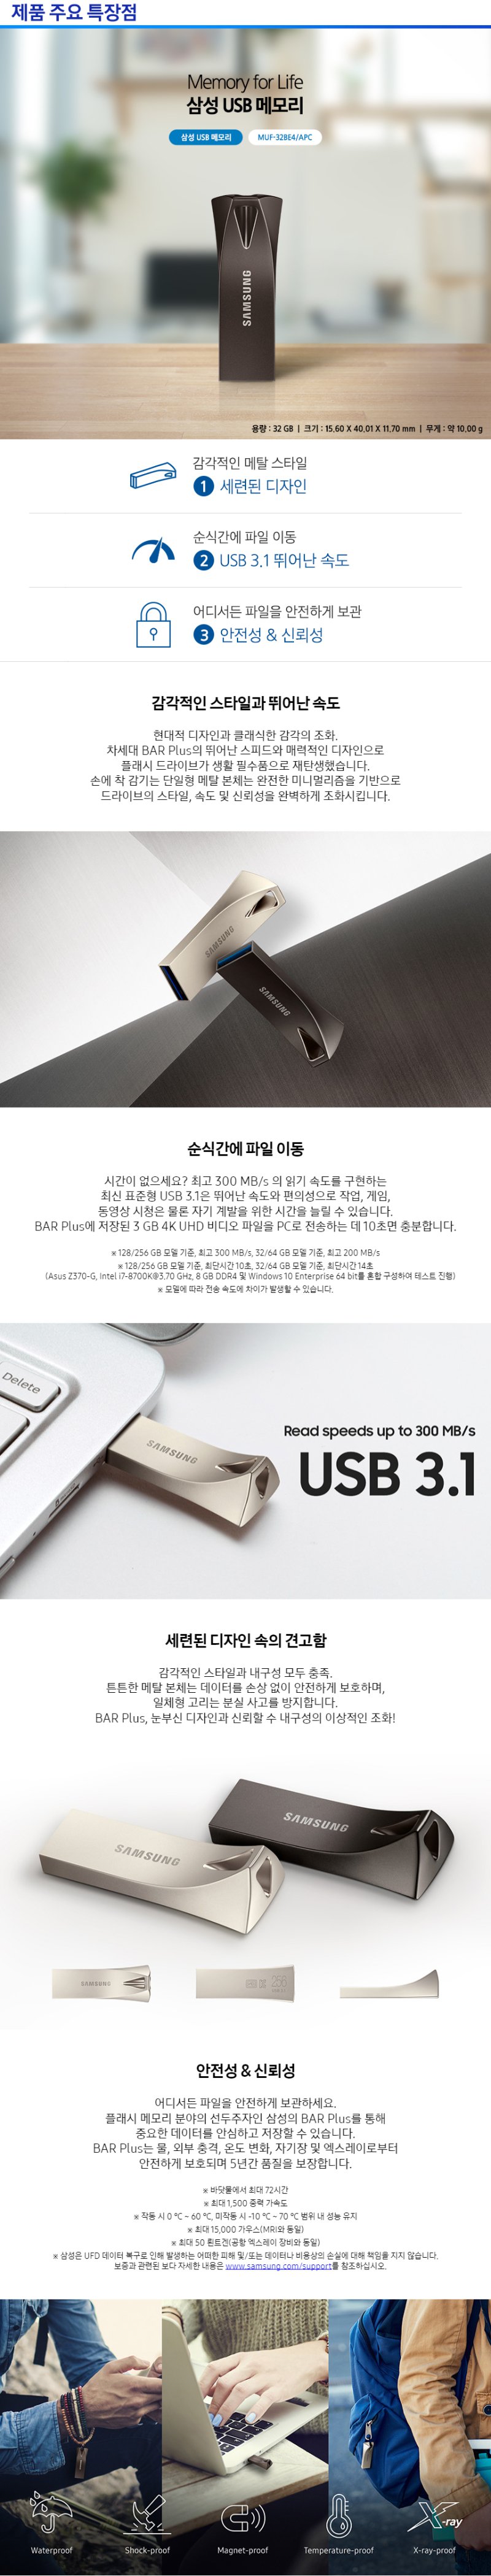 선택1 / 001 삼성 USB 3.1 BAR PLUS 그레이색상